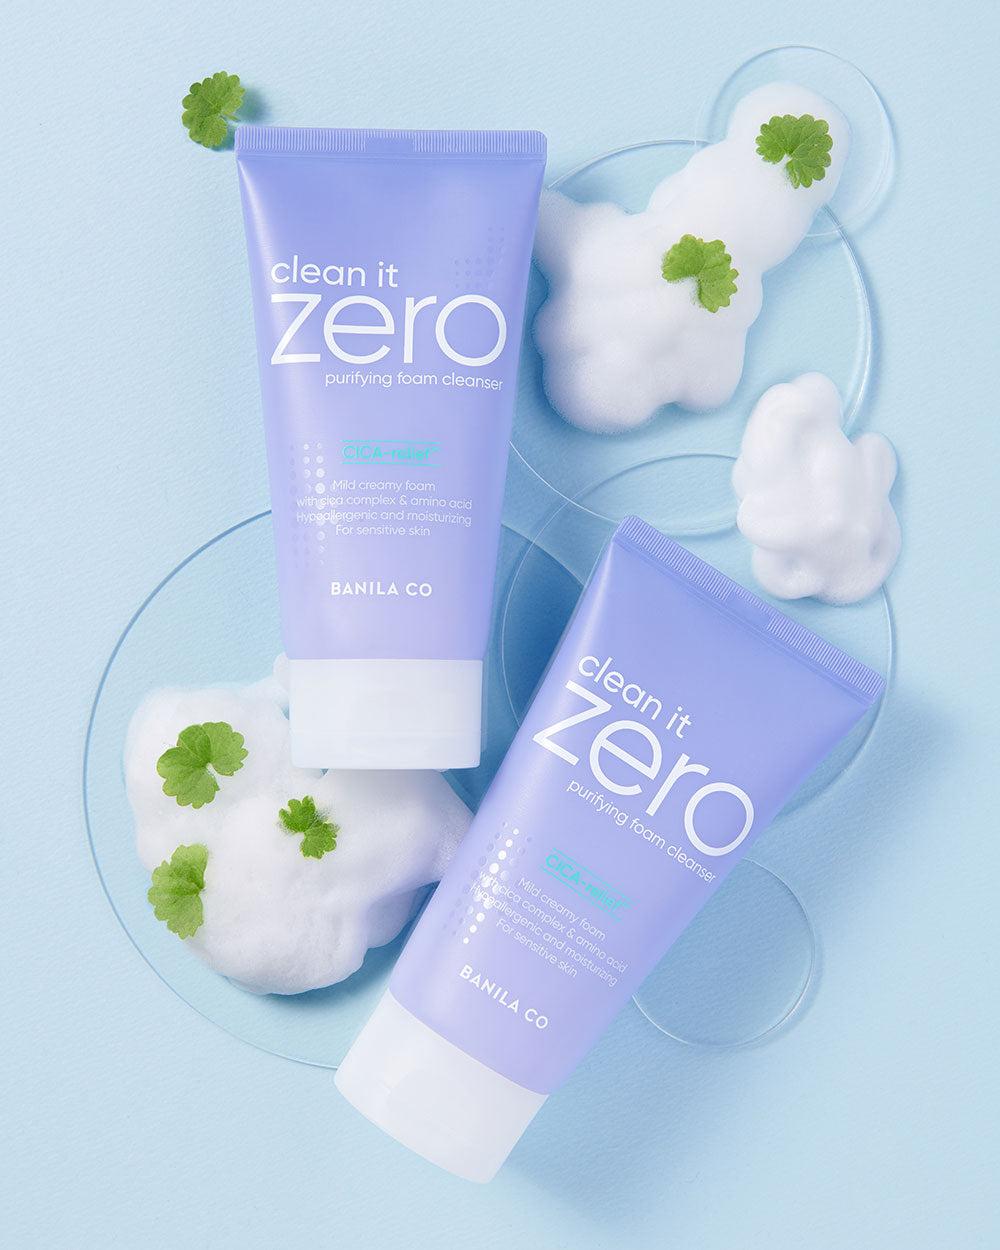 Clean it Zero Purifying Foam Cleanser 150ml | Banila CoClean it Zero Purifying Foam Cleanser 150ml | Banila Co